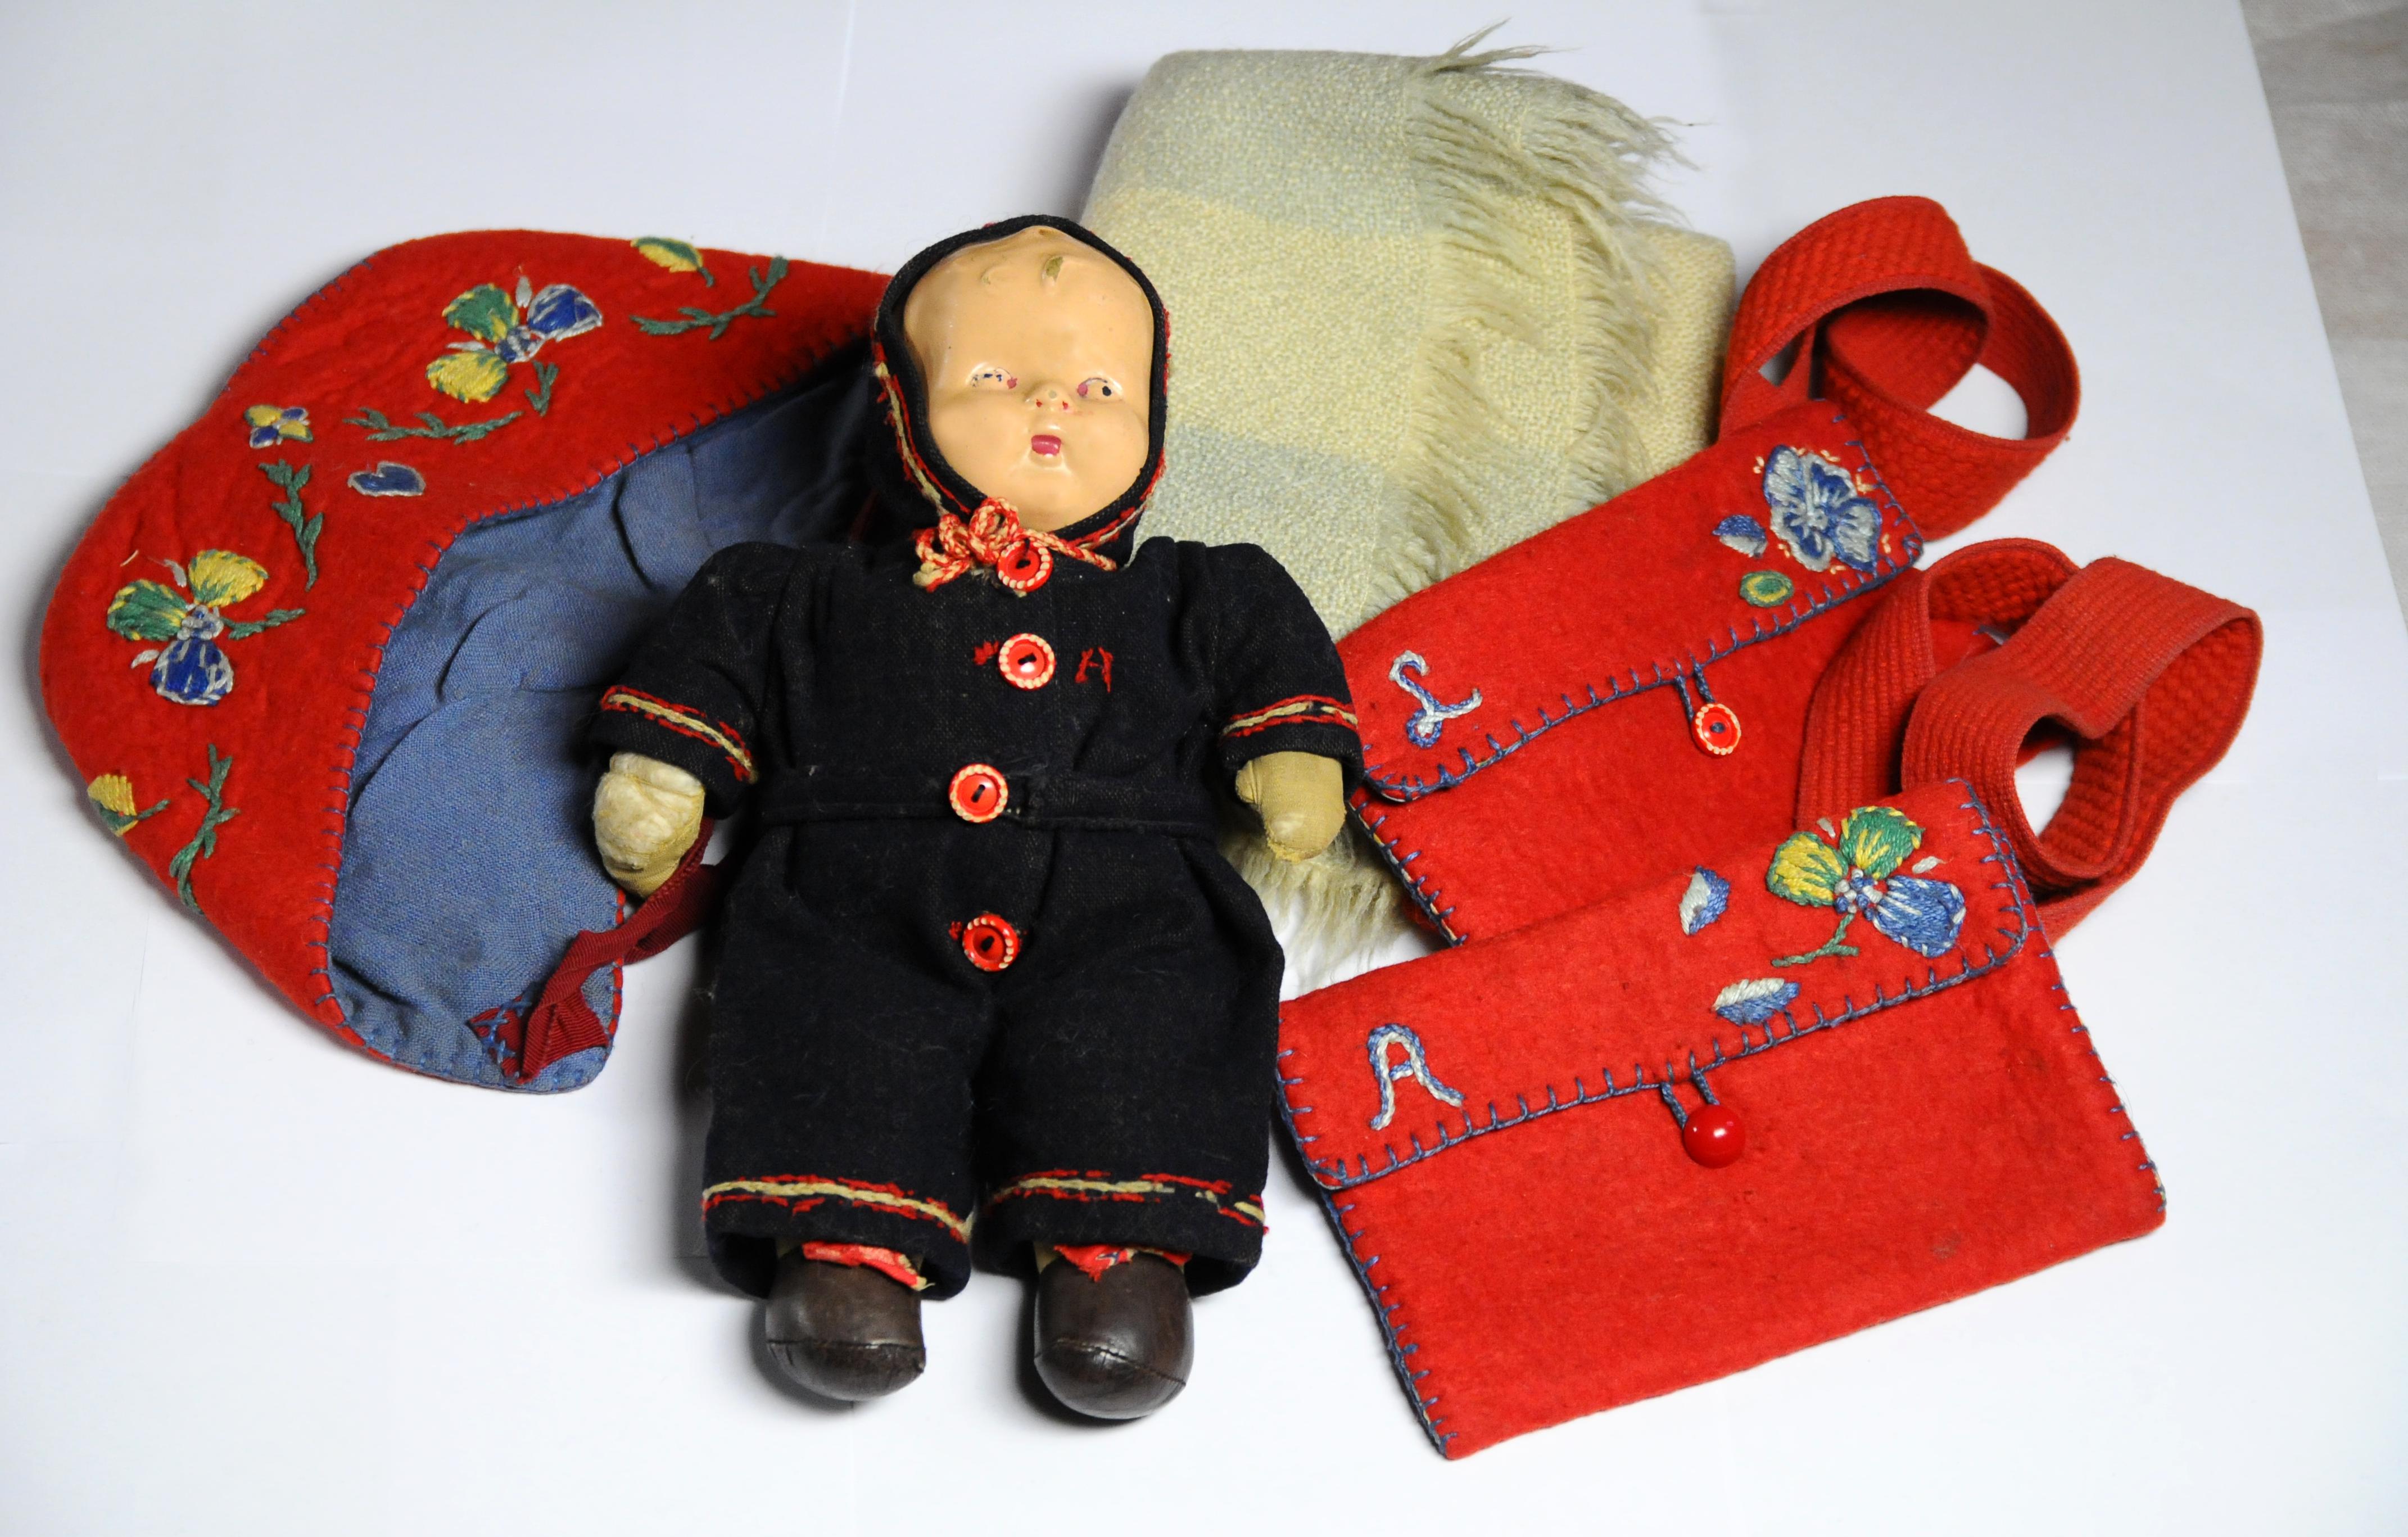 Bambola, borsette e cappellini delle due sorelline Bucci utilizzati durante la loro permanenza nell’istituto ebraico di Lingfield